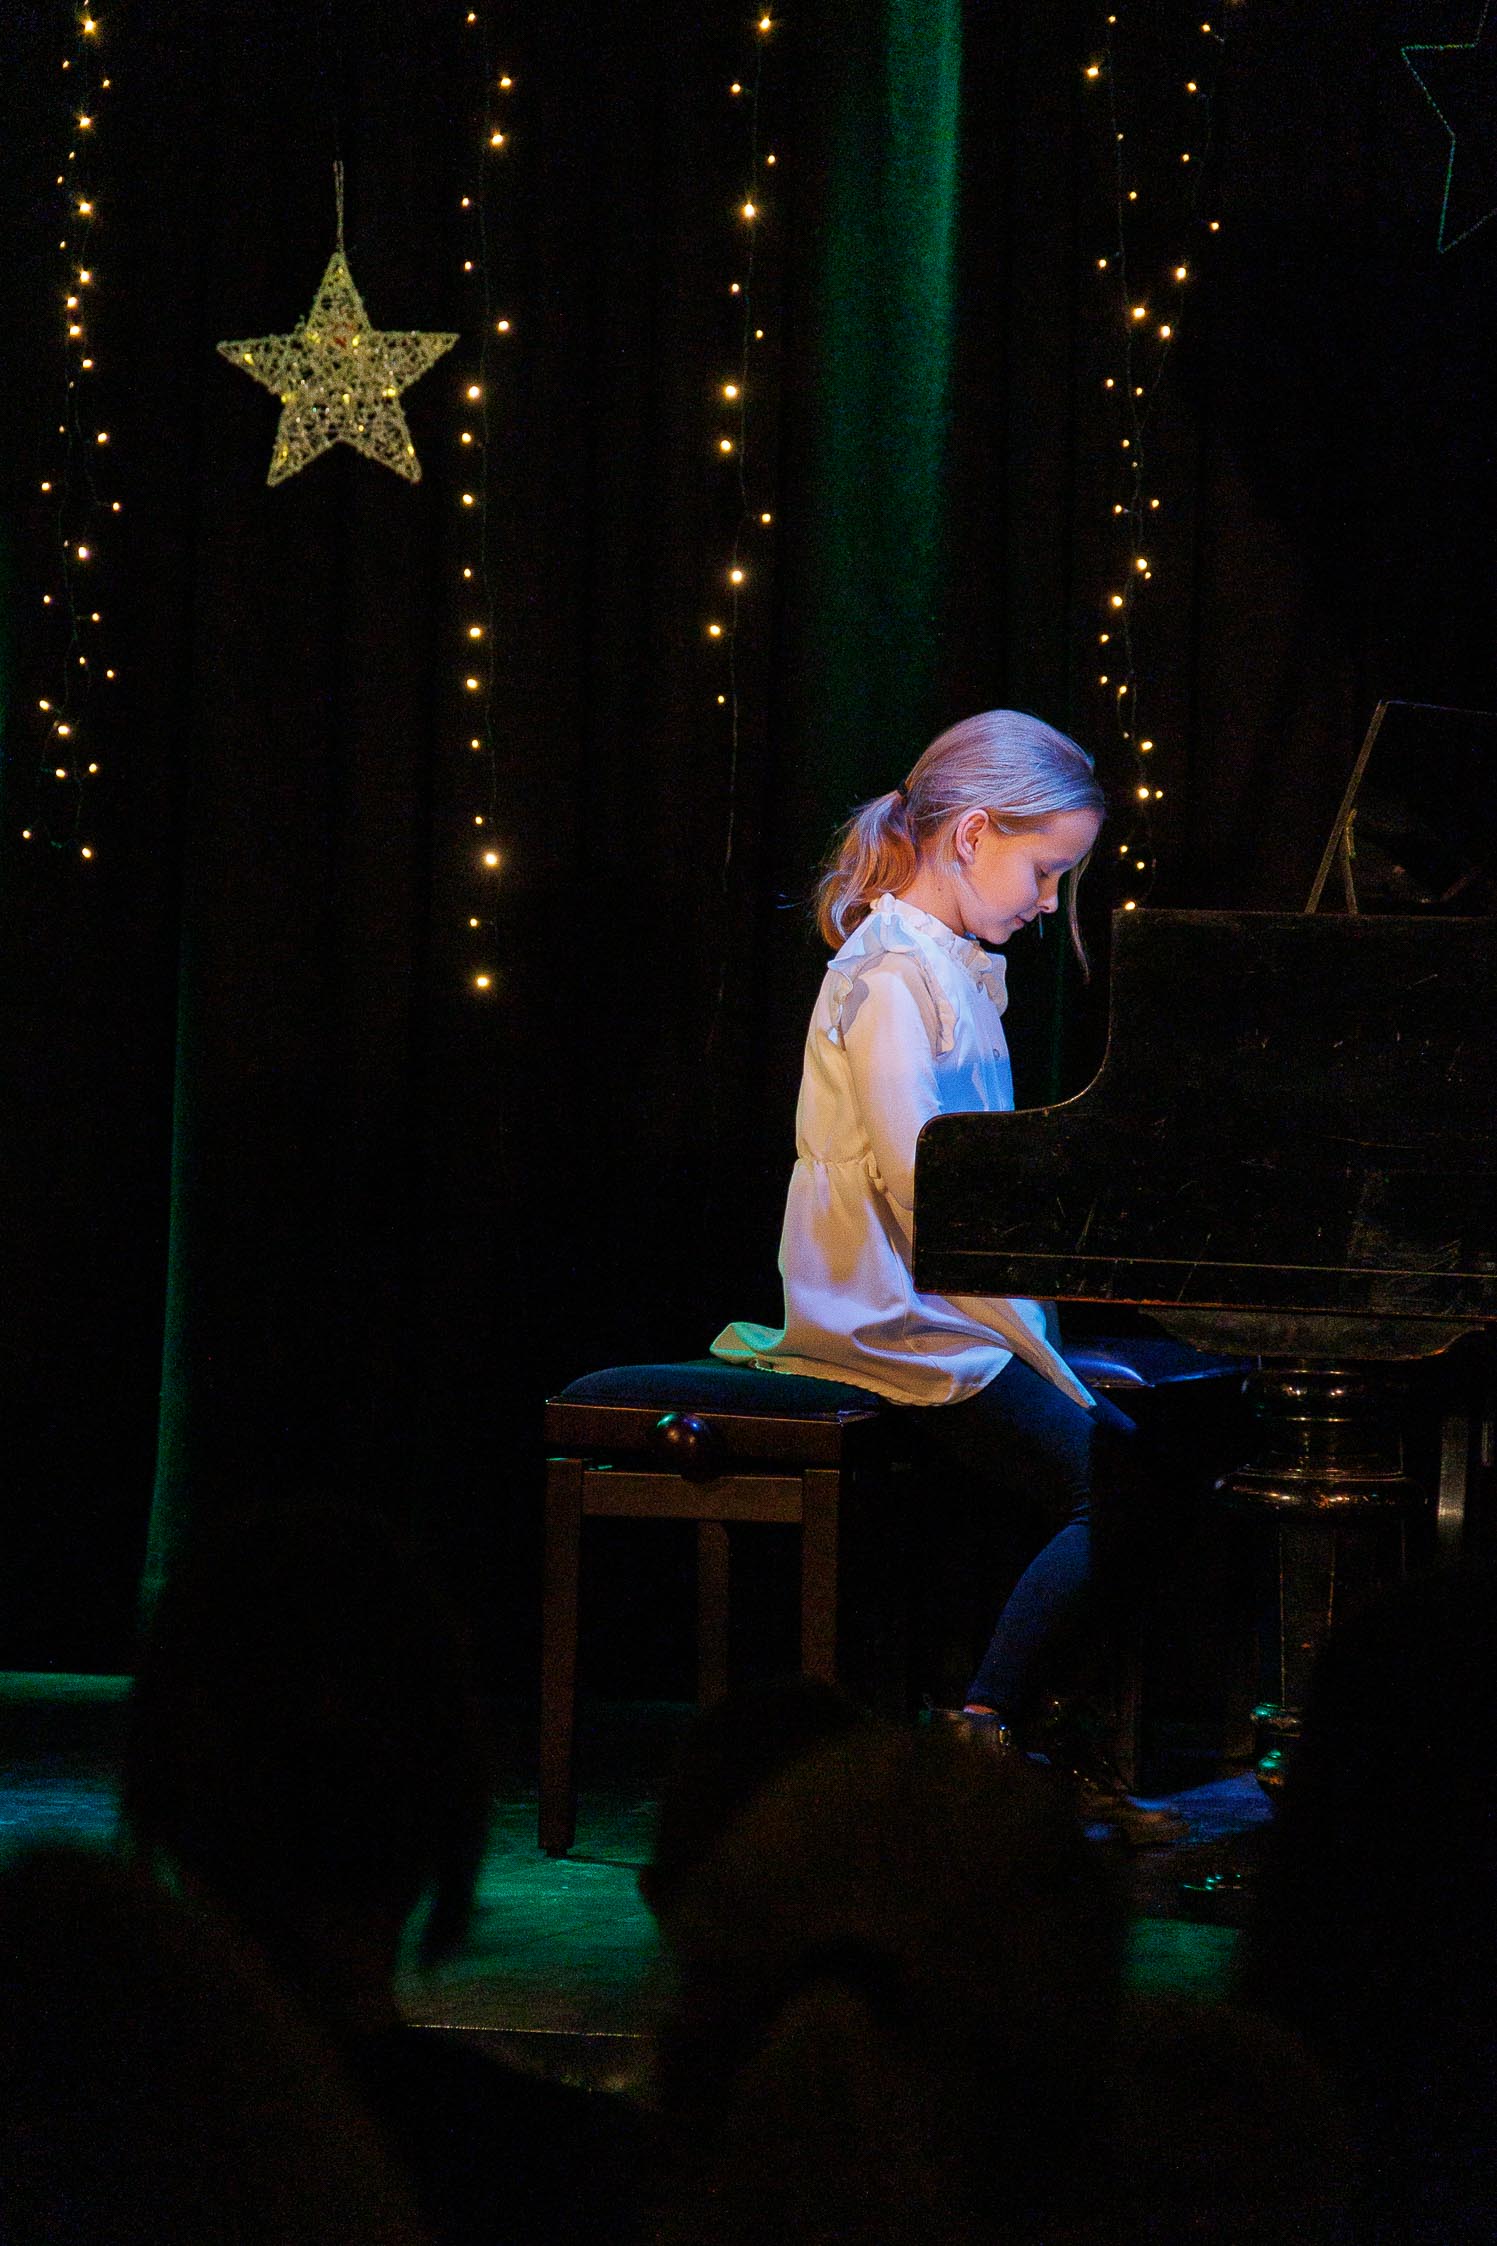 dziewczynka siedzi przed fortepianem i gra , daleki kadr, widać całą scenę